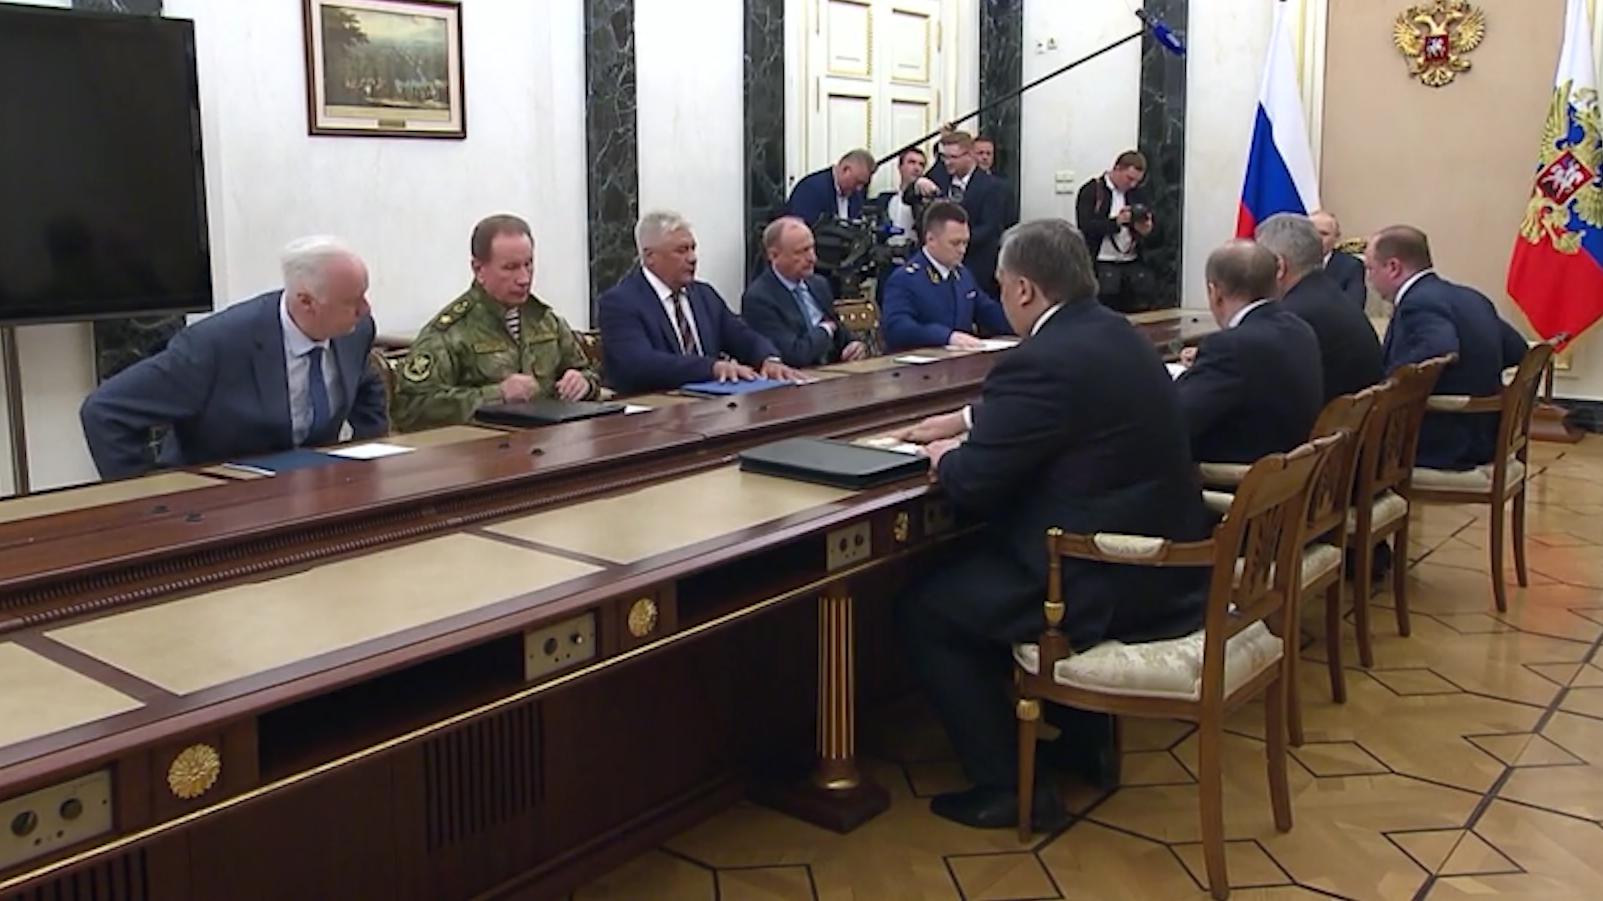 Путин после обращения встретился с Шойгу и руководителями силовиков